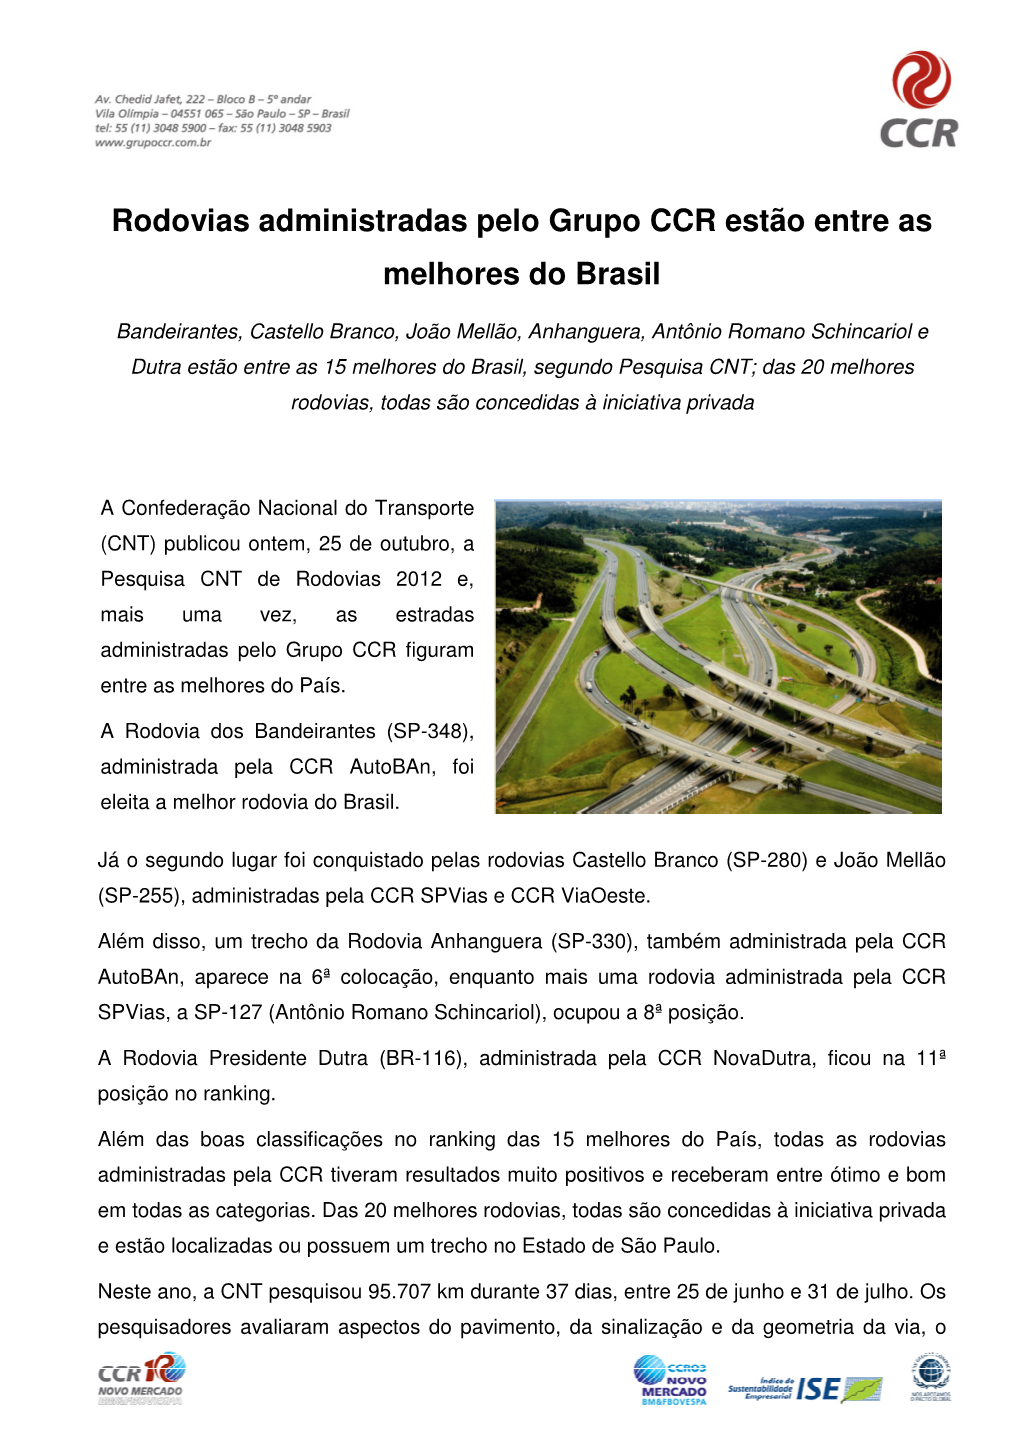 Rodovias Administradas Pelo Grupo CCR Estão Entre As Melhores Do Brasil